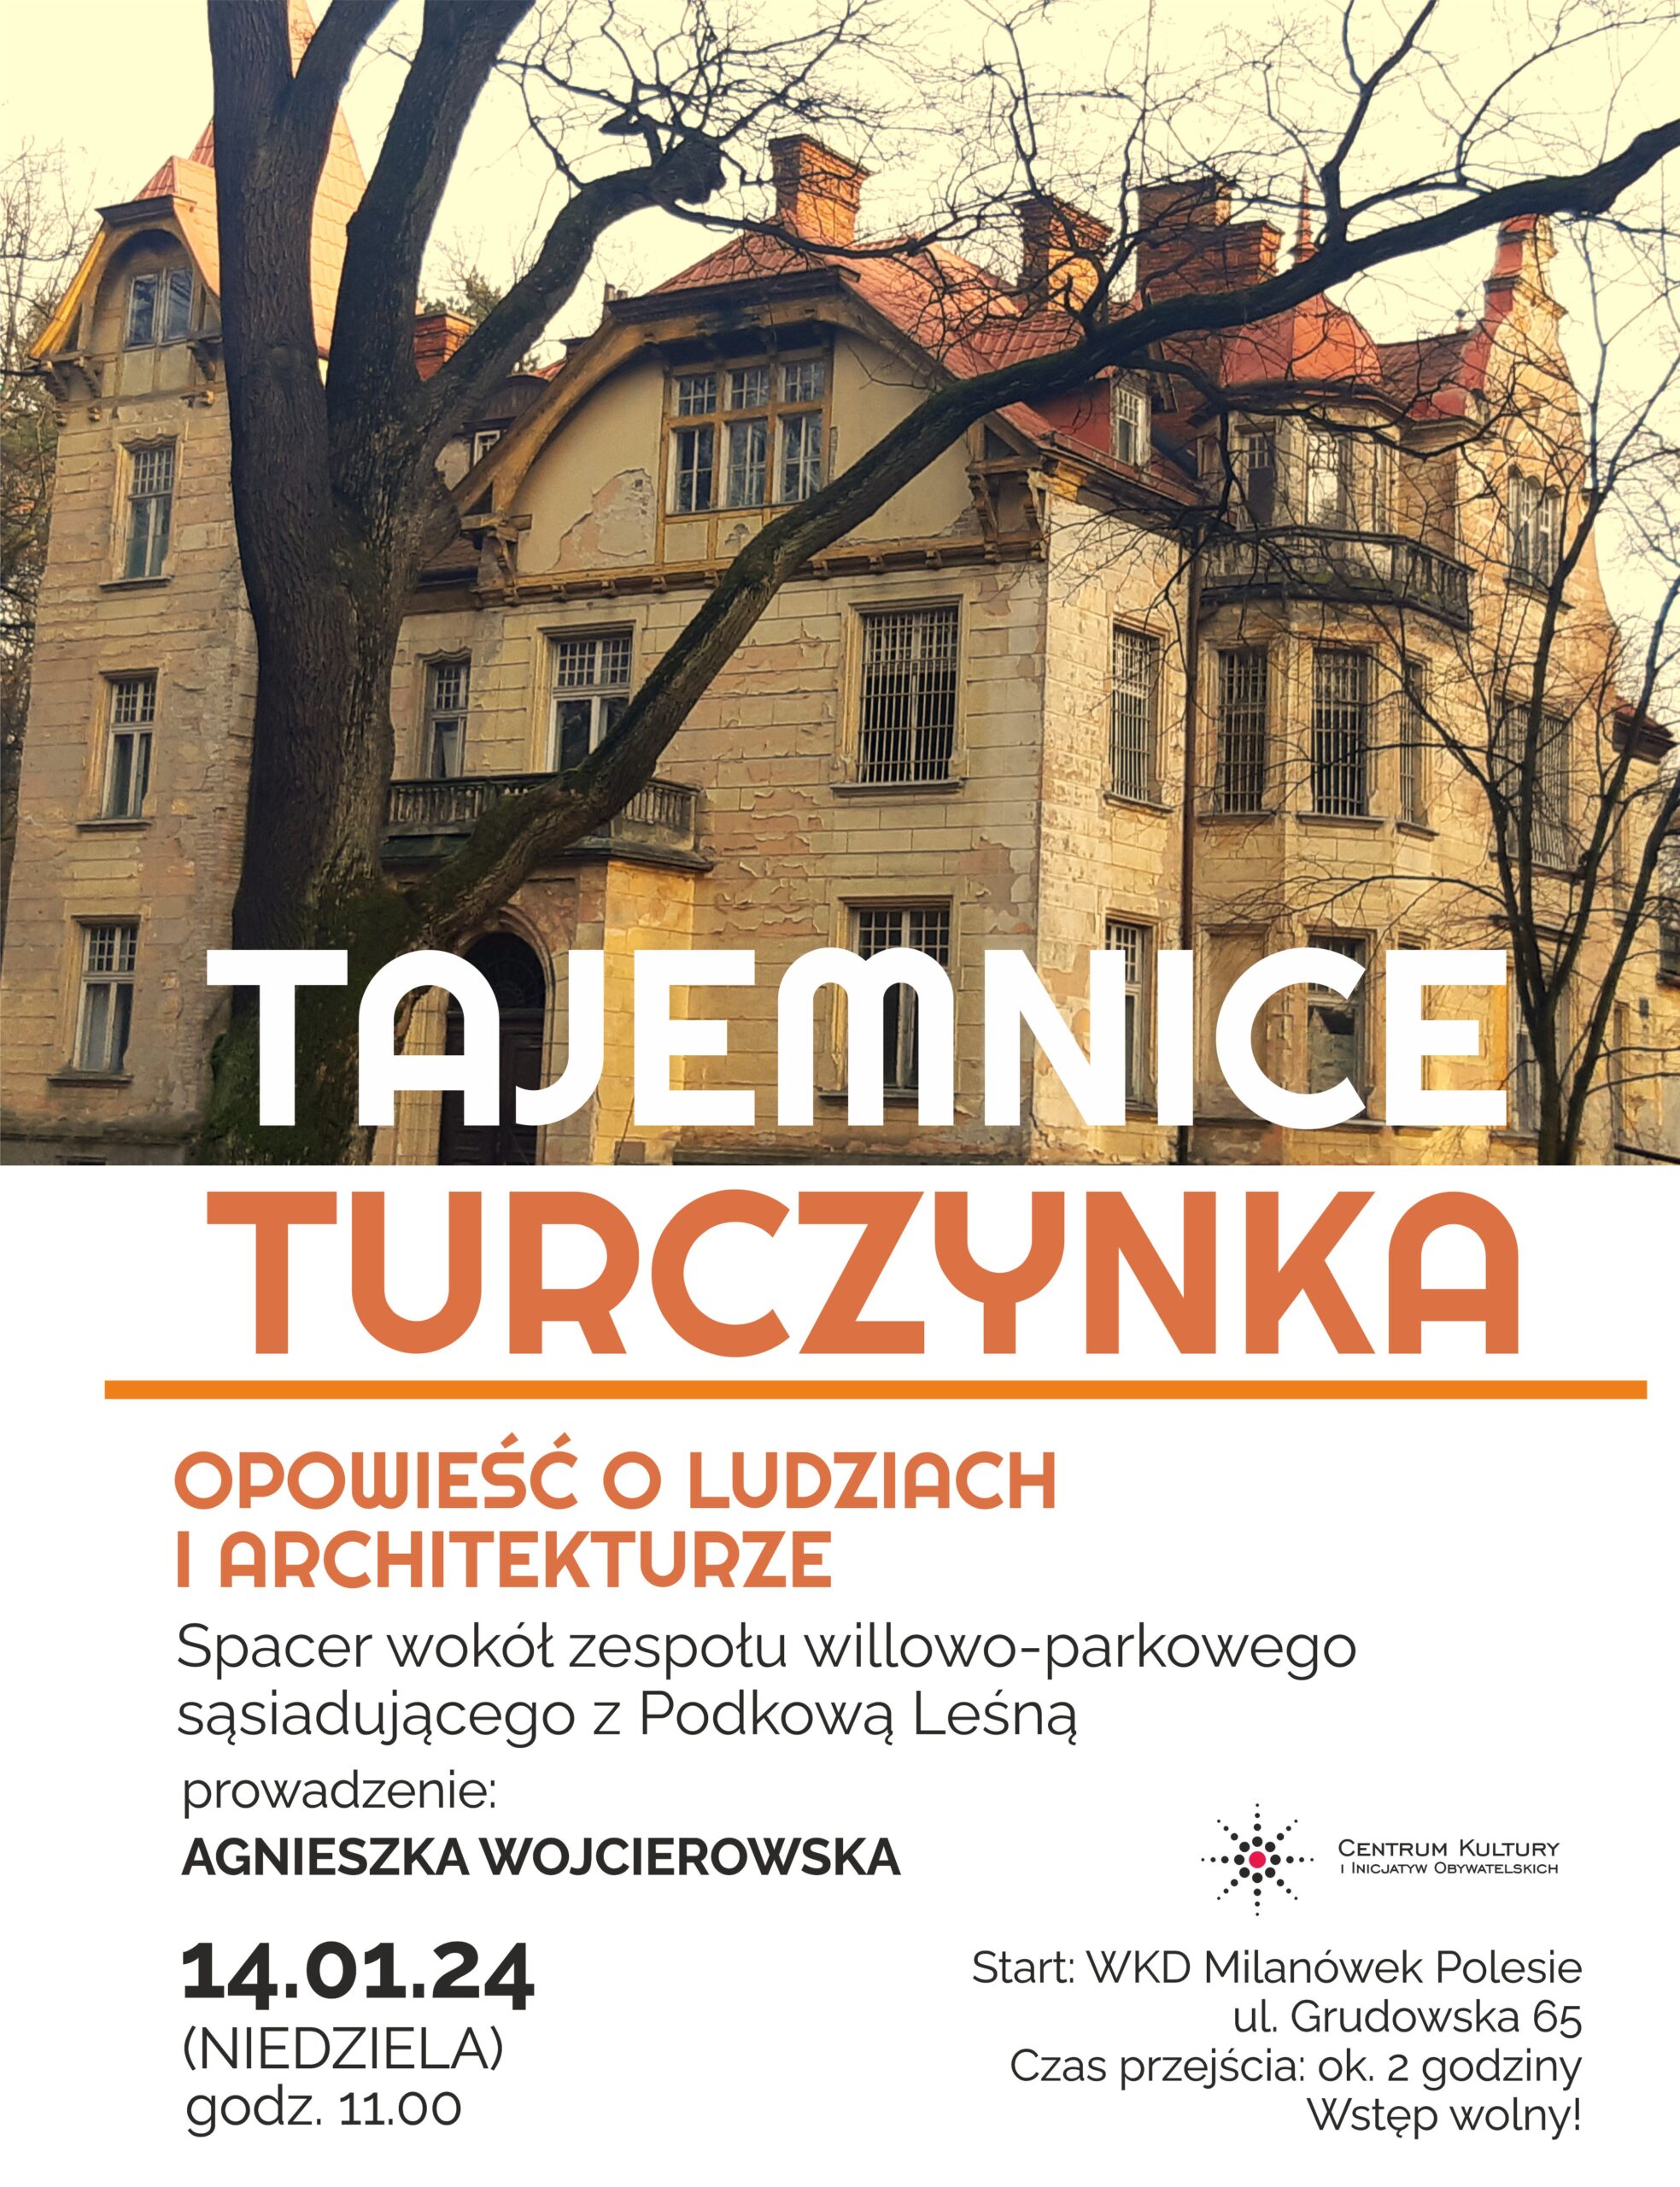 You are currently viewing Tajemnice Turczynka – spacer wokół zespołu willowo-parkowego